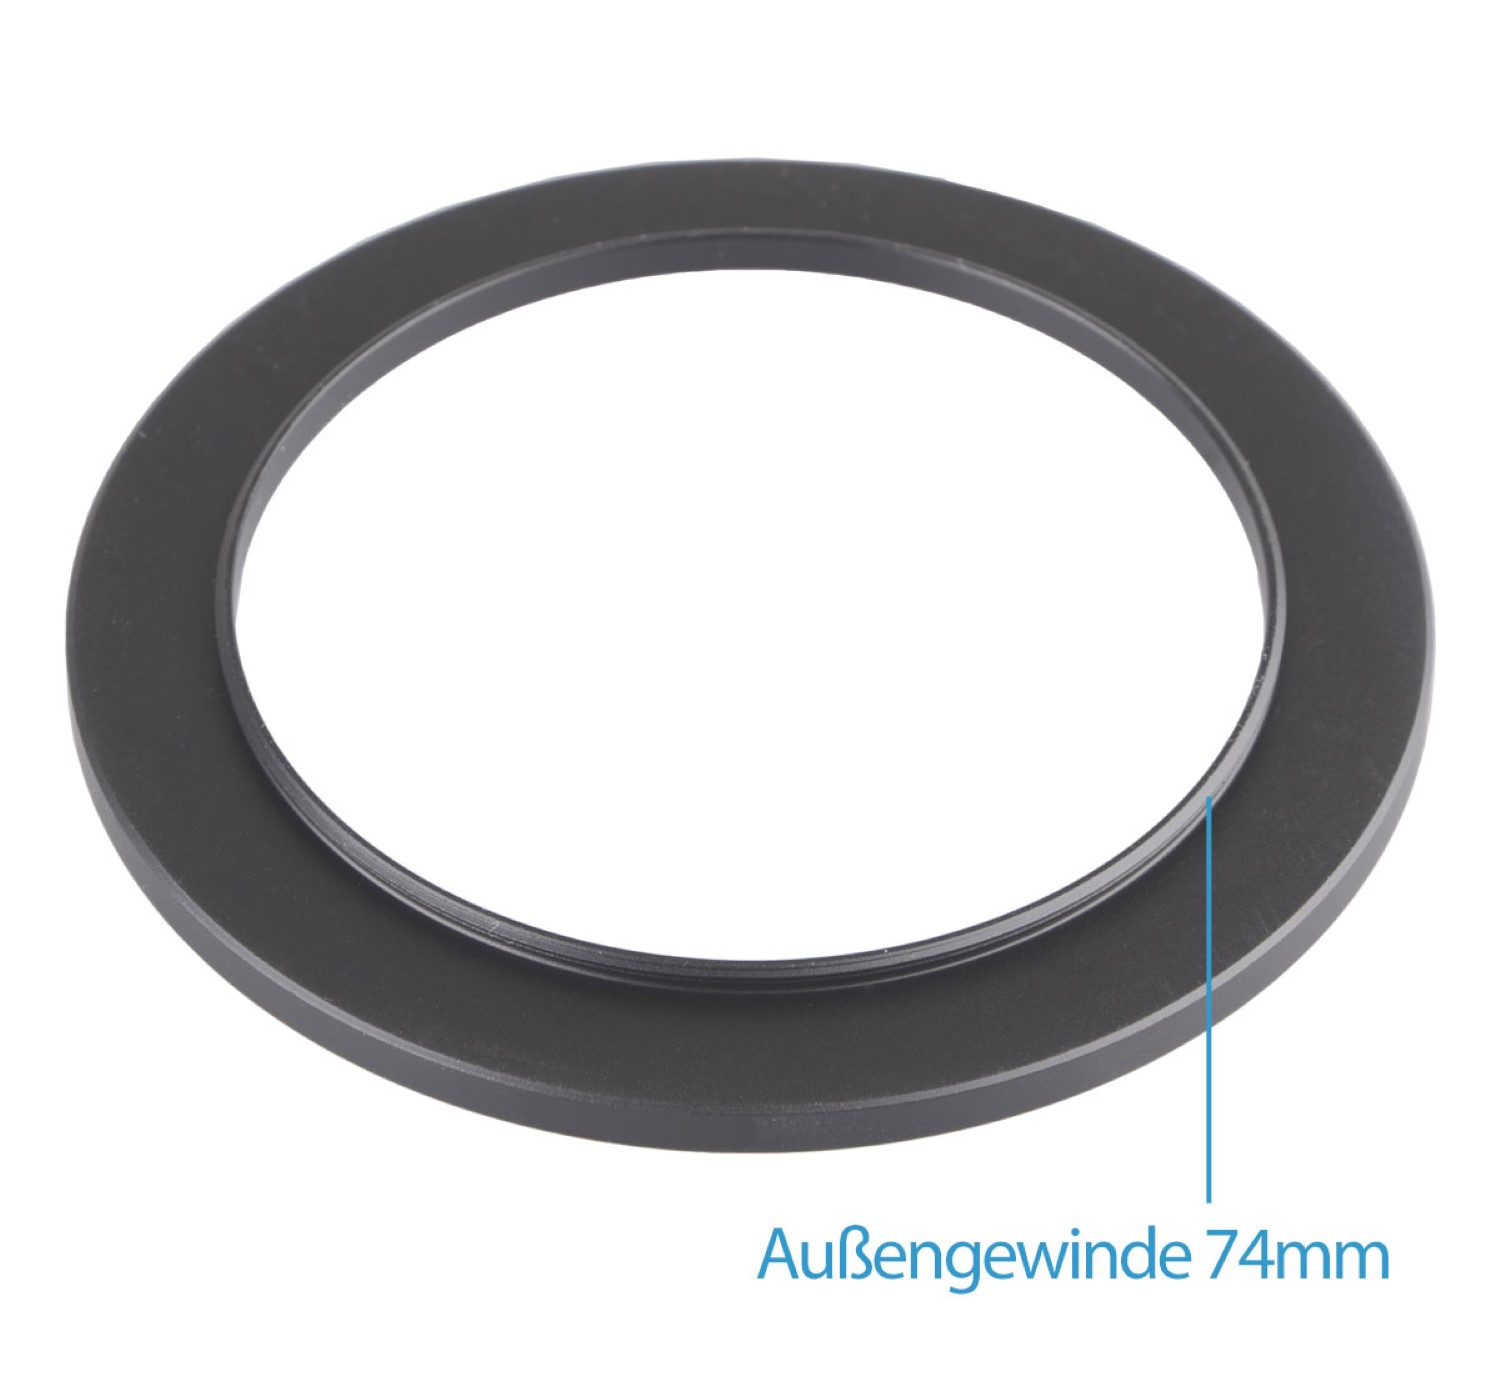 AYEX Black, Step-Up passend Filtergewinde Ring, mit Adapter, Objektive für